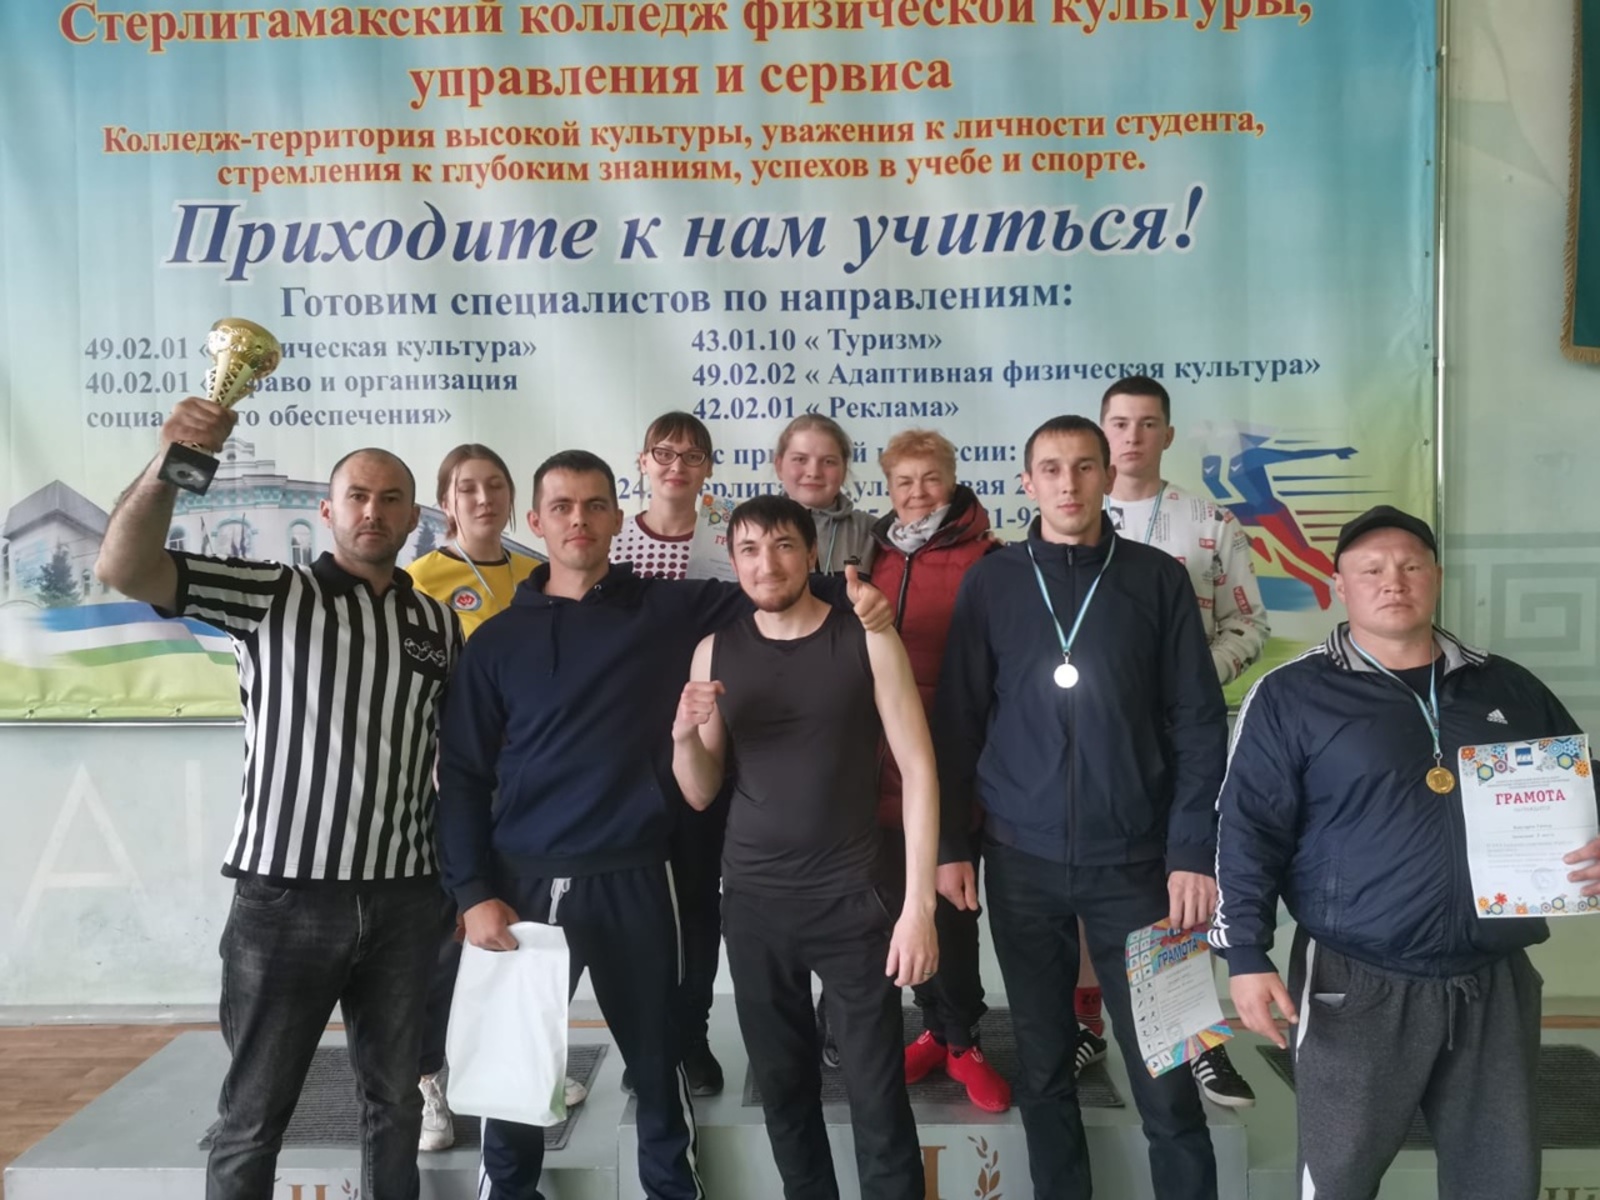 Сборная команда атлетического клуба «Батыр» вновь доказала, что она лучшая в РБ